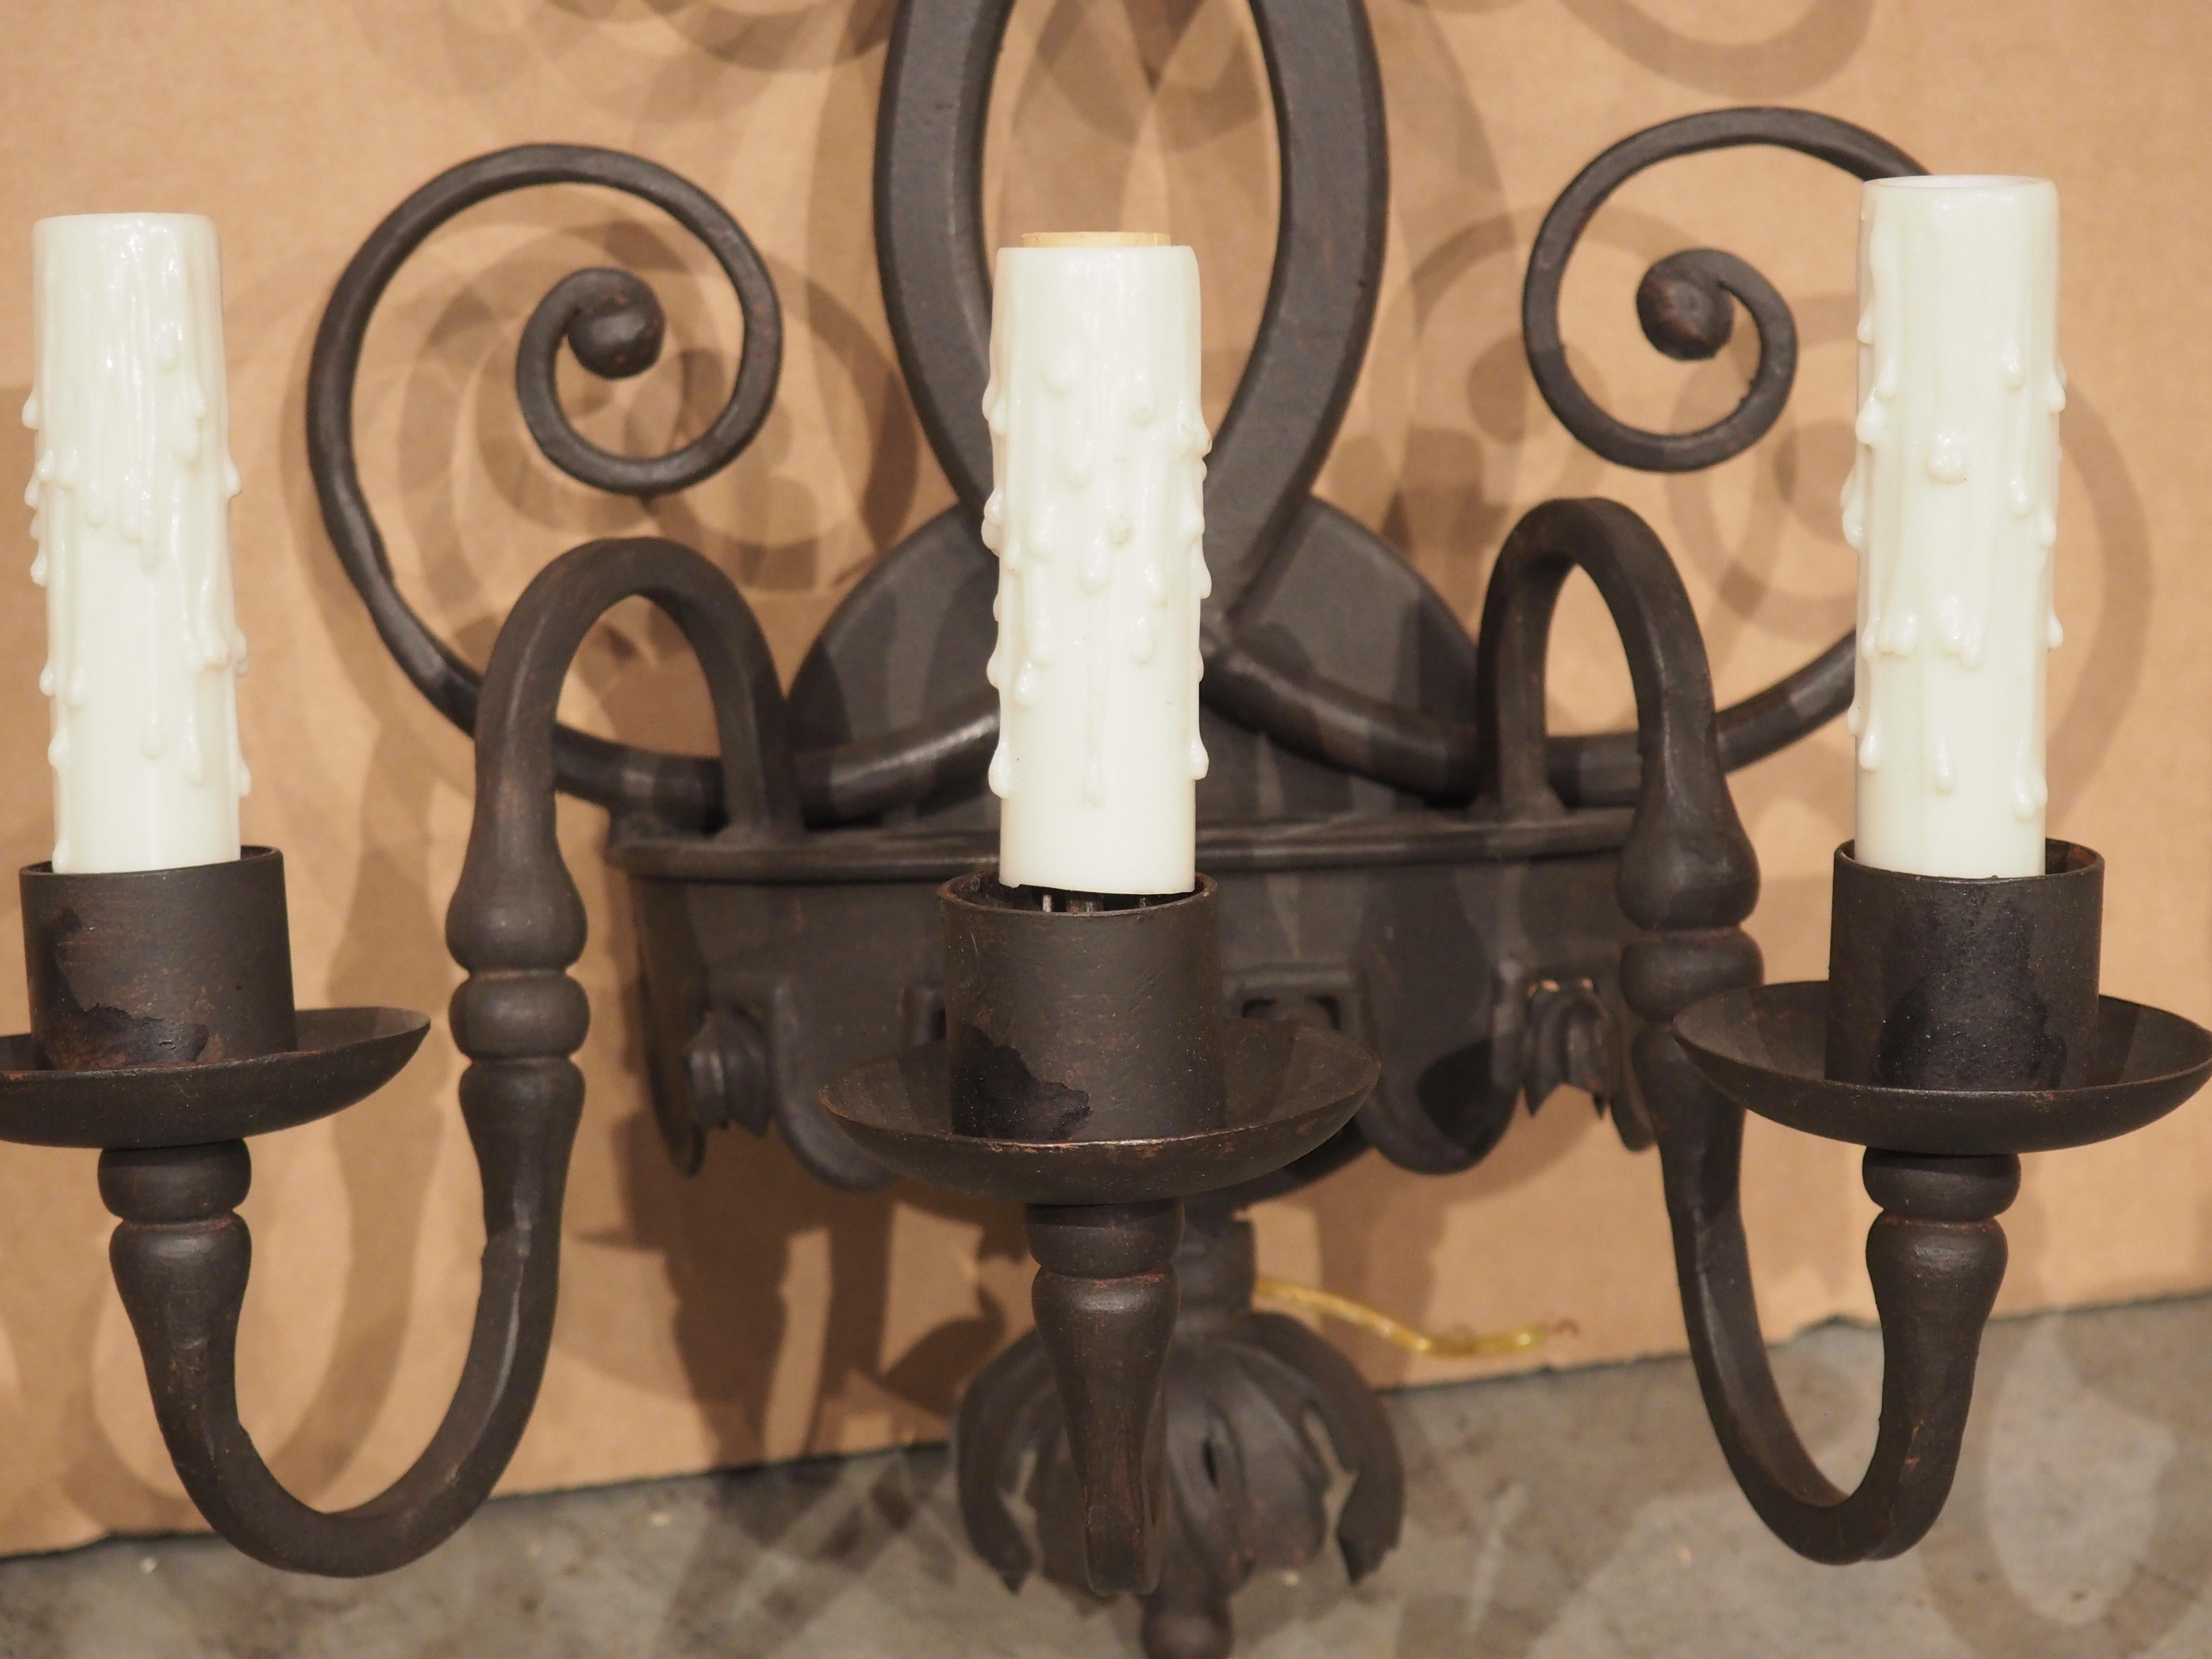 Dieser dreiarmige Wandleuchter aus Eisen ist im Stil spanischer Architekturbeleuchtung geschmiedet und wird von weißen, künstlichen Kerzenhülsen gekrönt, die aus Untertassen herausragen. Jeder Arm hat eine gewundene S-Rollenform mit einem gedrehten